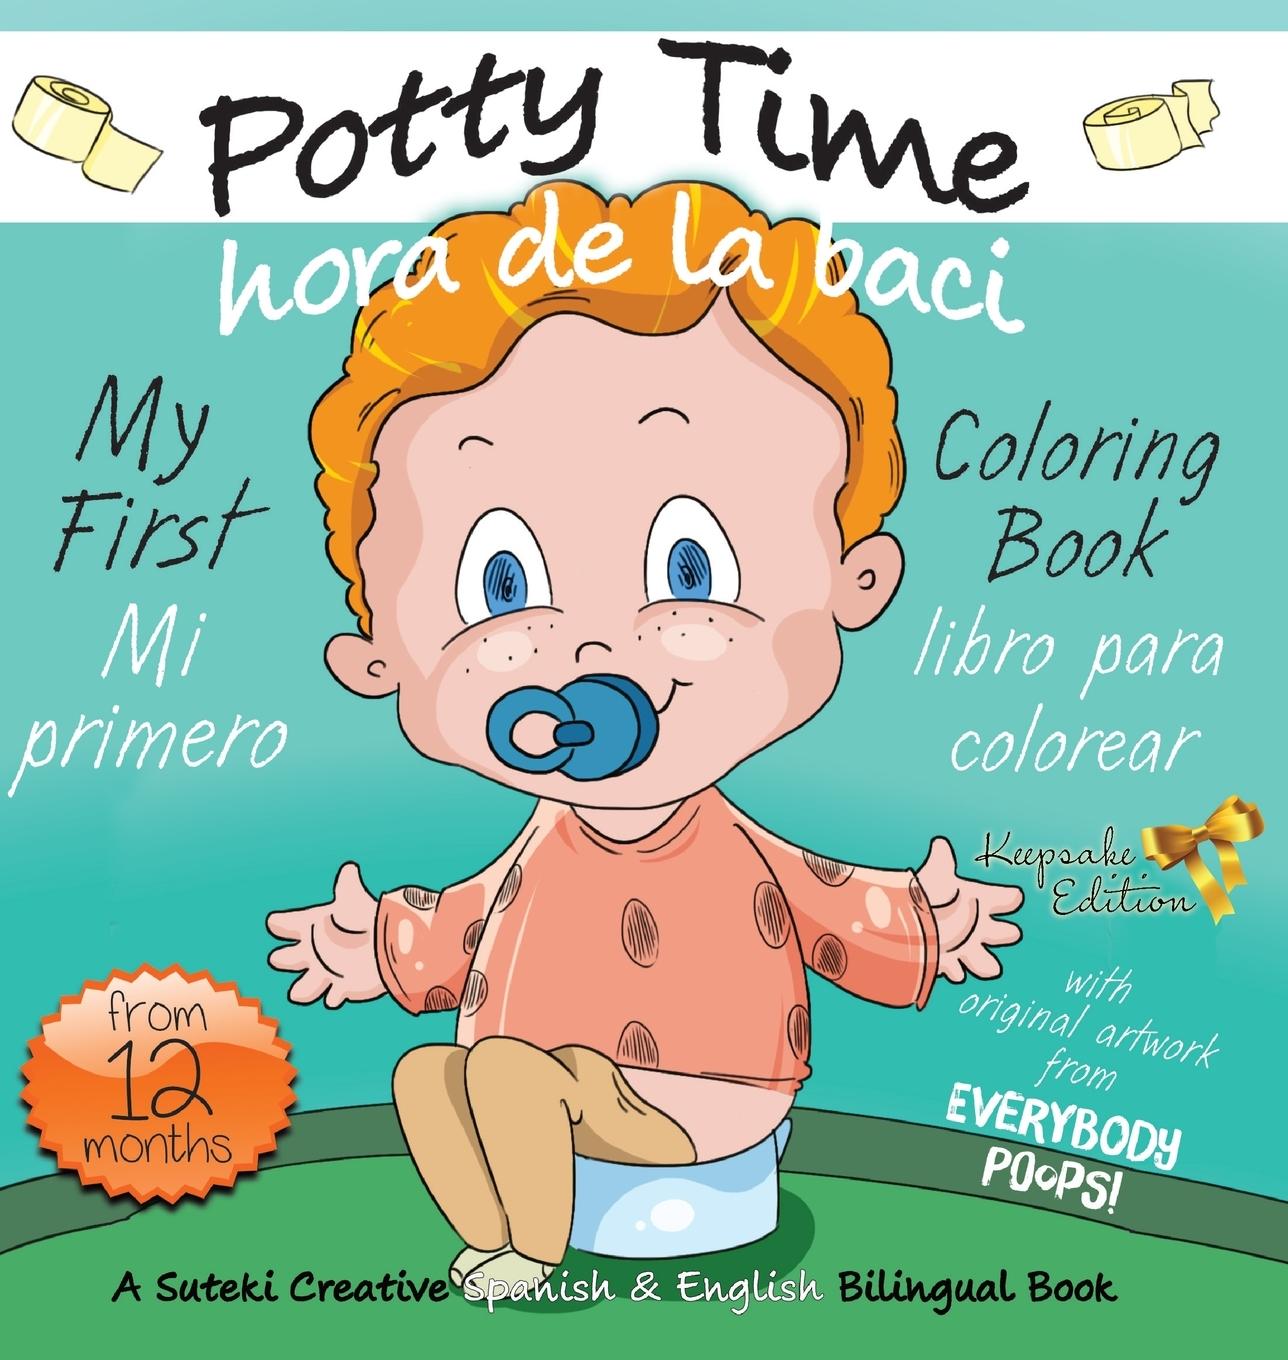 Carte My First Potty Time Coloring Book / Mi primero hora de la baci libro para colorear 